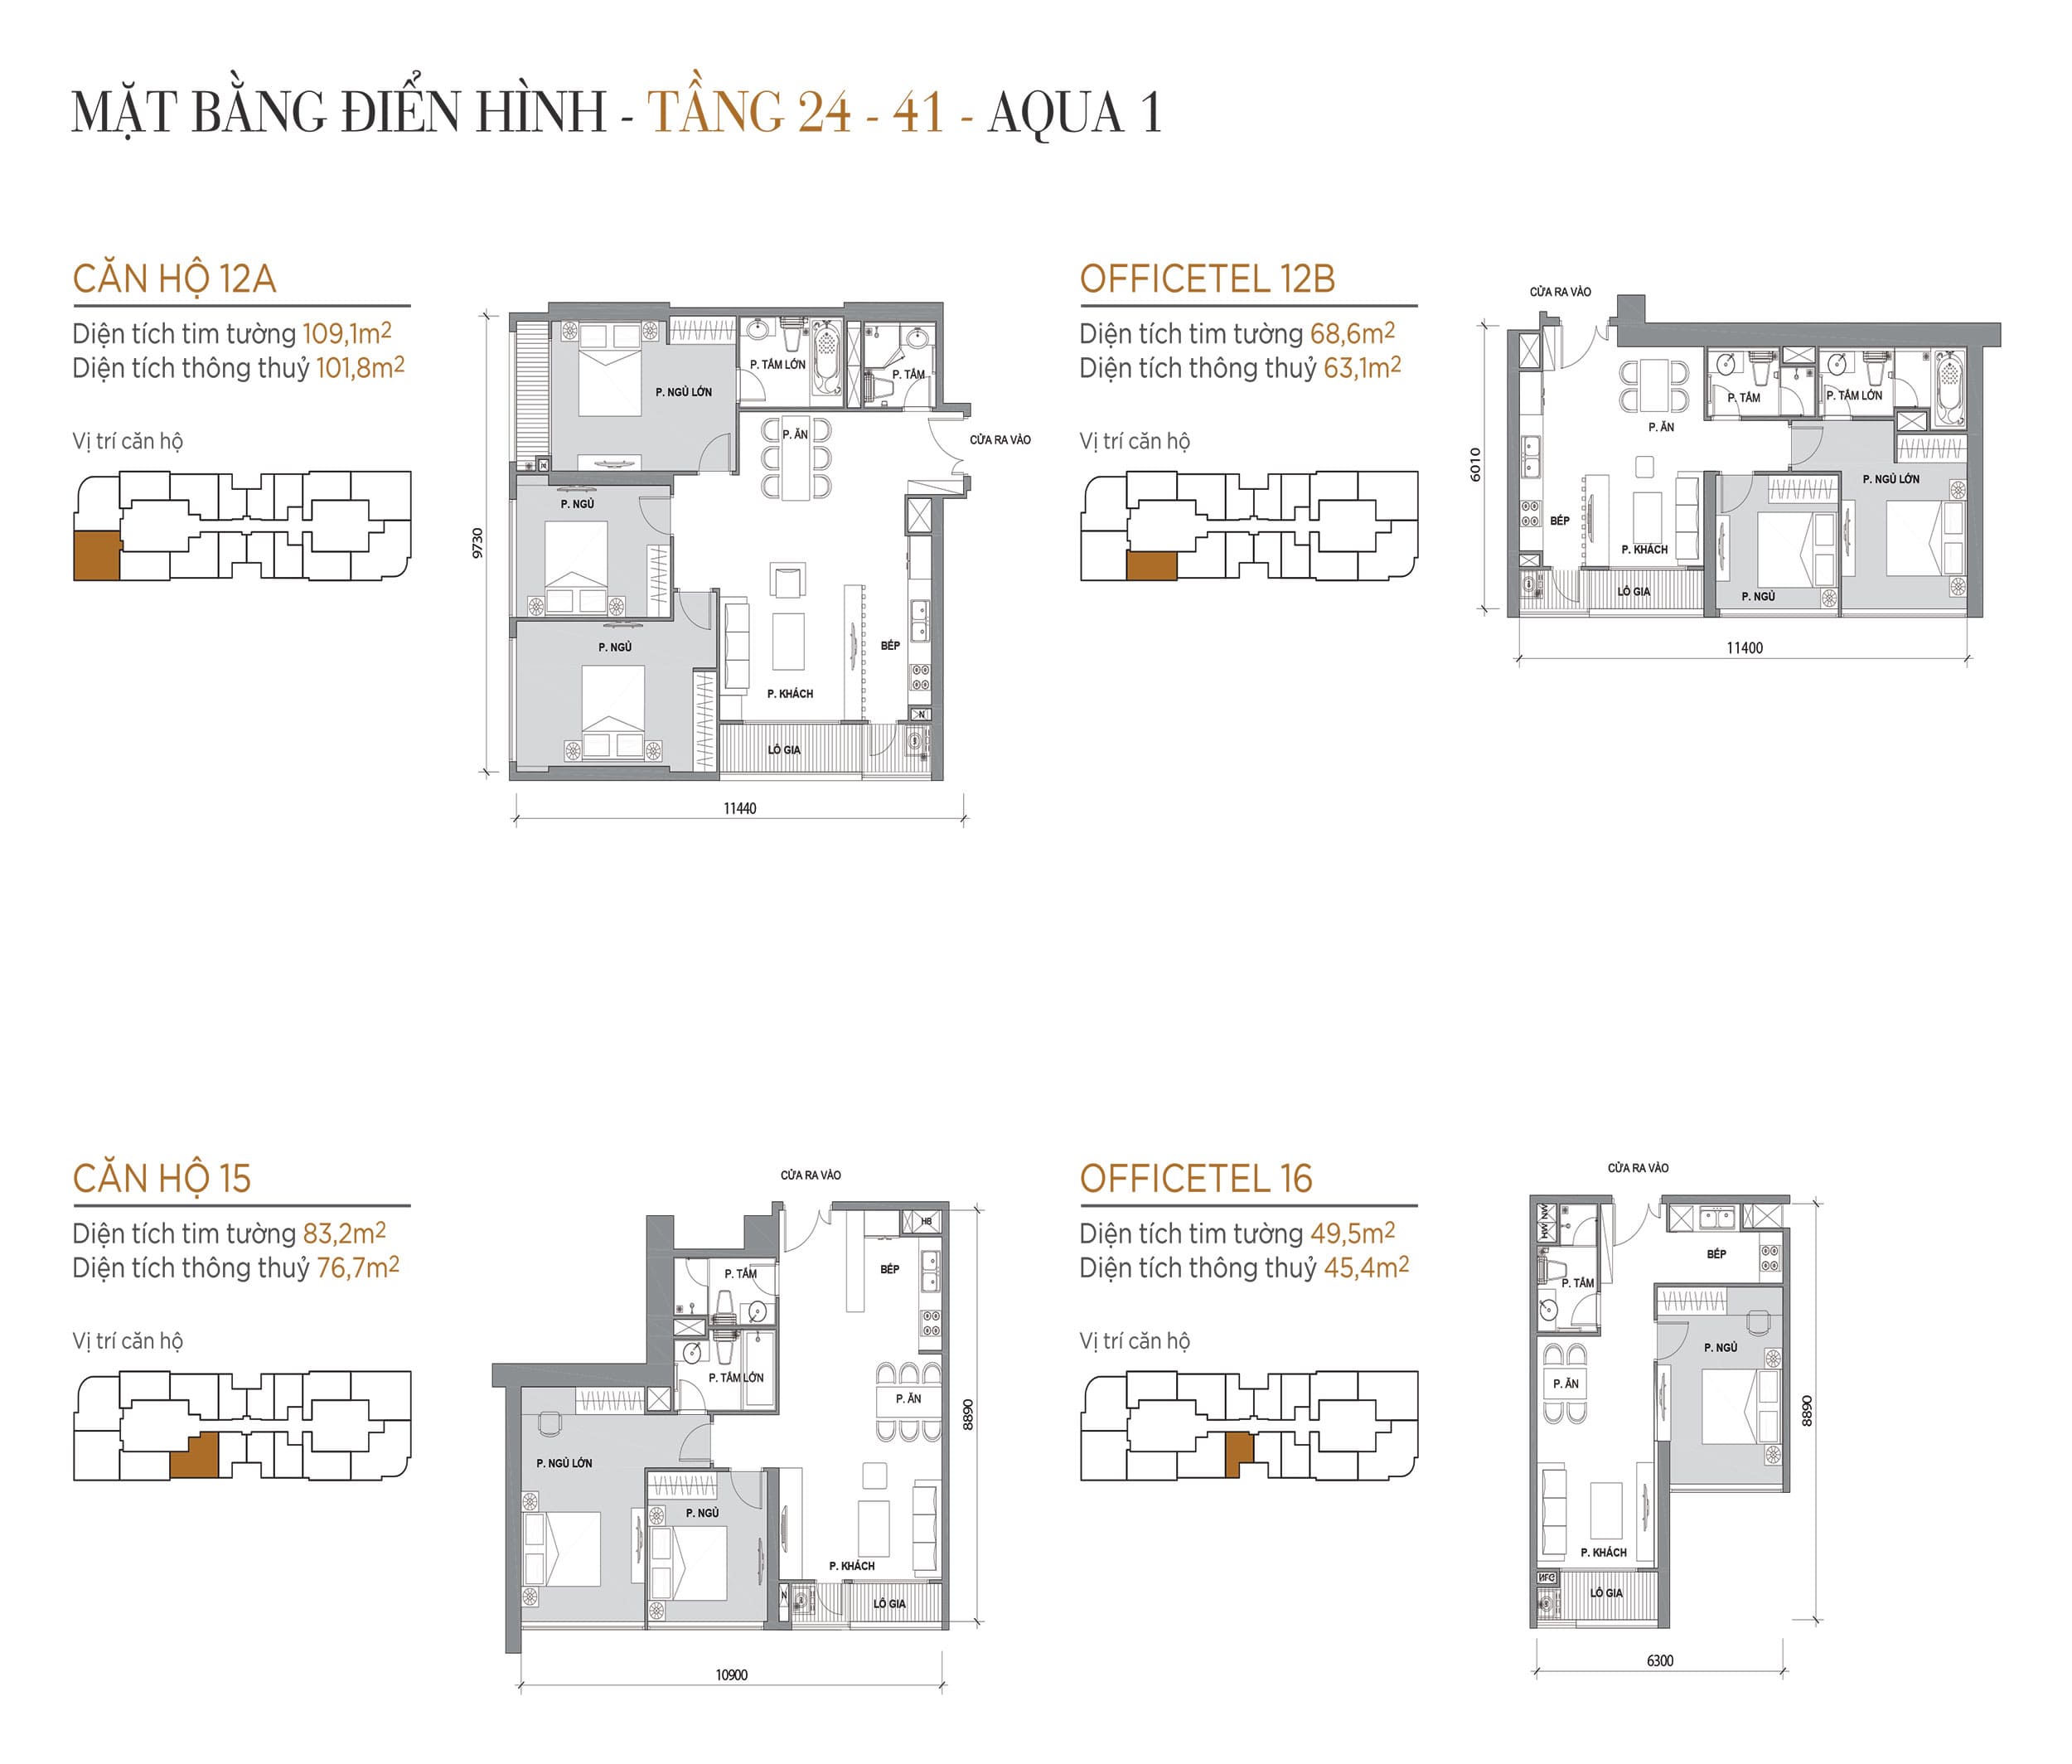 Layout thiết kế điển hình Tầng 24 đến Tầng 41 Tòa Aqua 1 loại Căn hộ 12A, Officetel 12B, Căn hộ 15, Officetel 16.